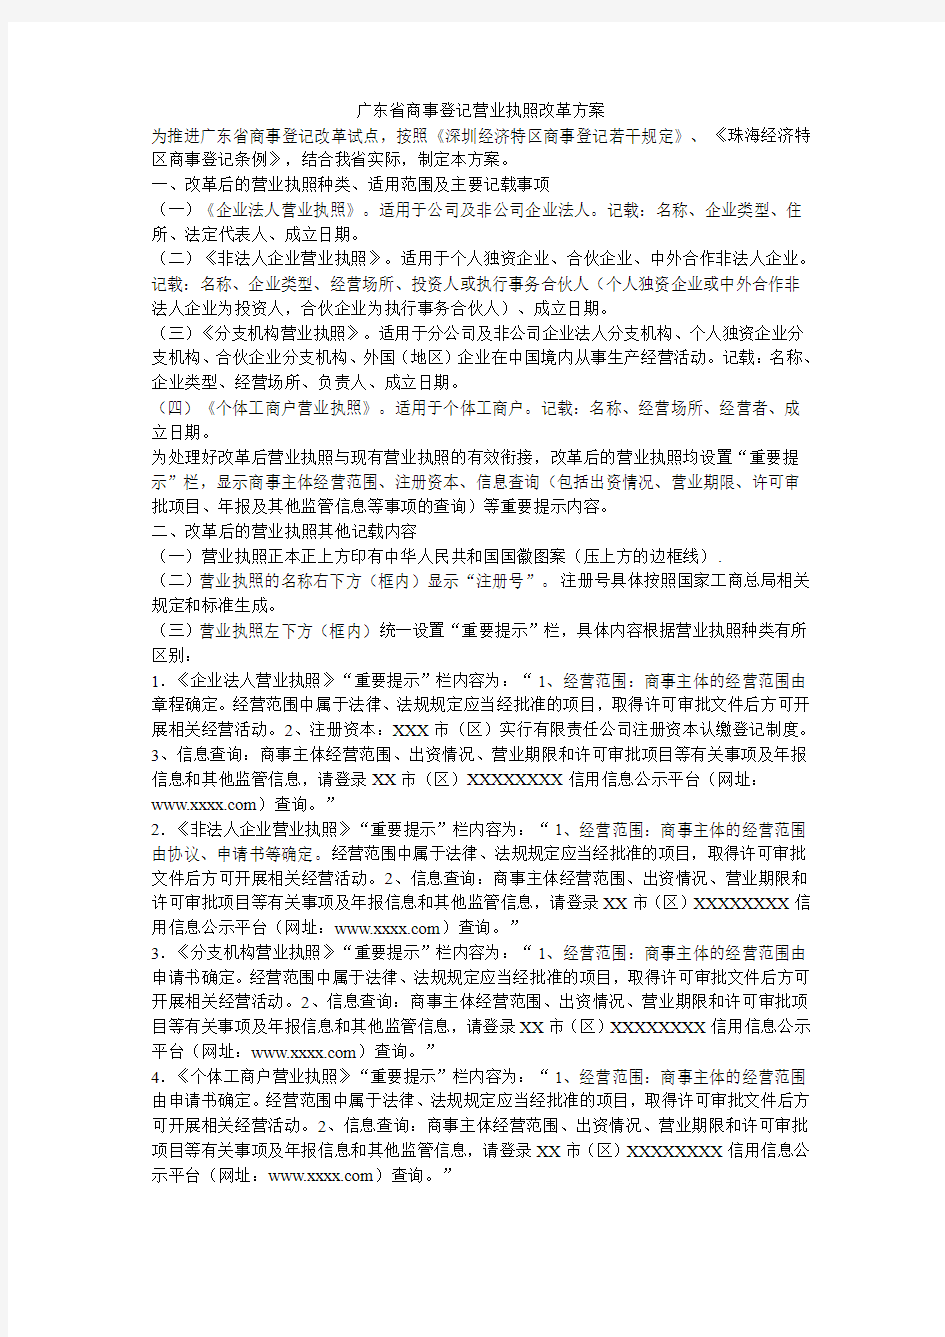 广东省商事登记营业执照改革方案